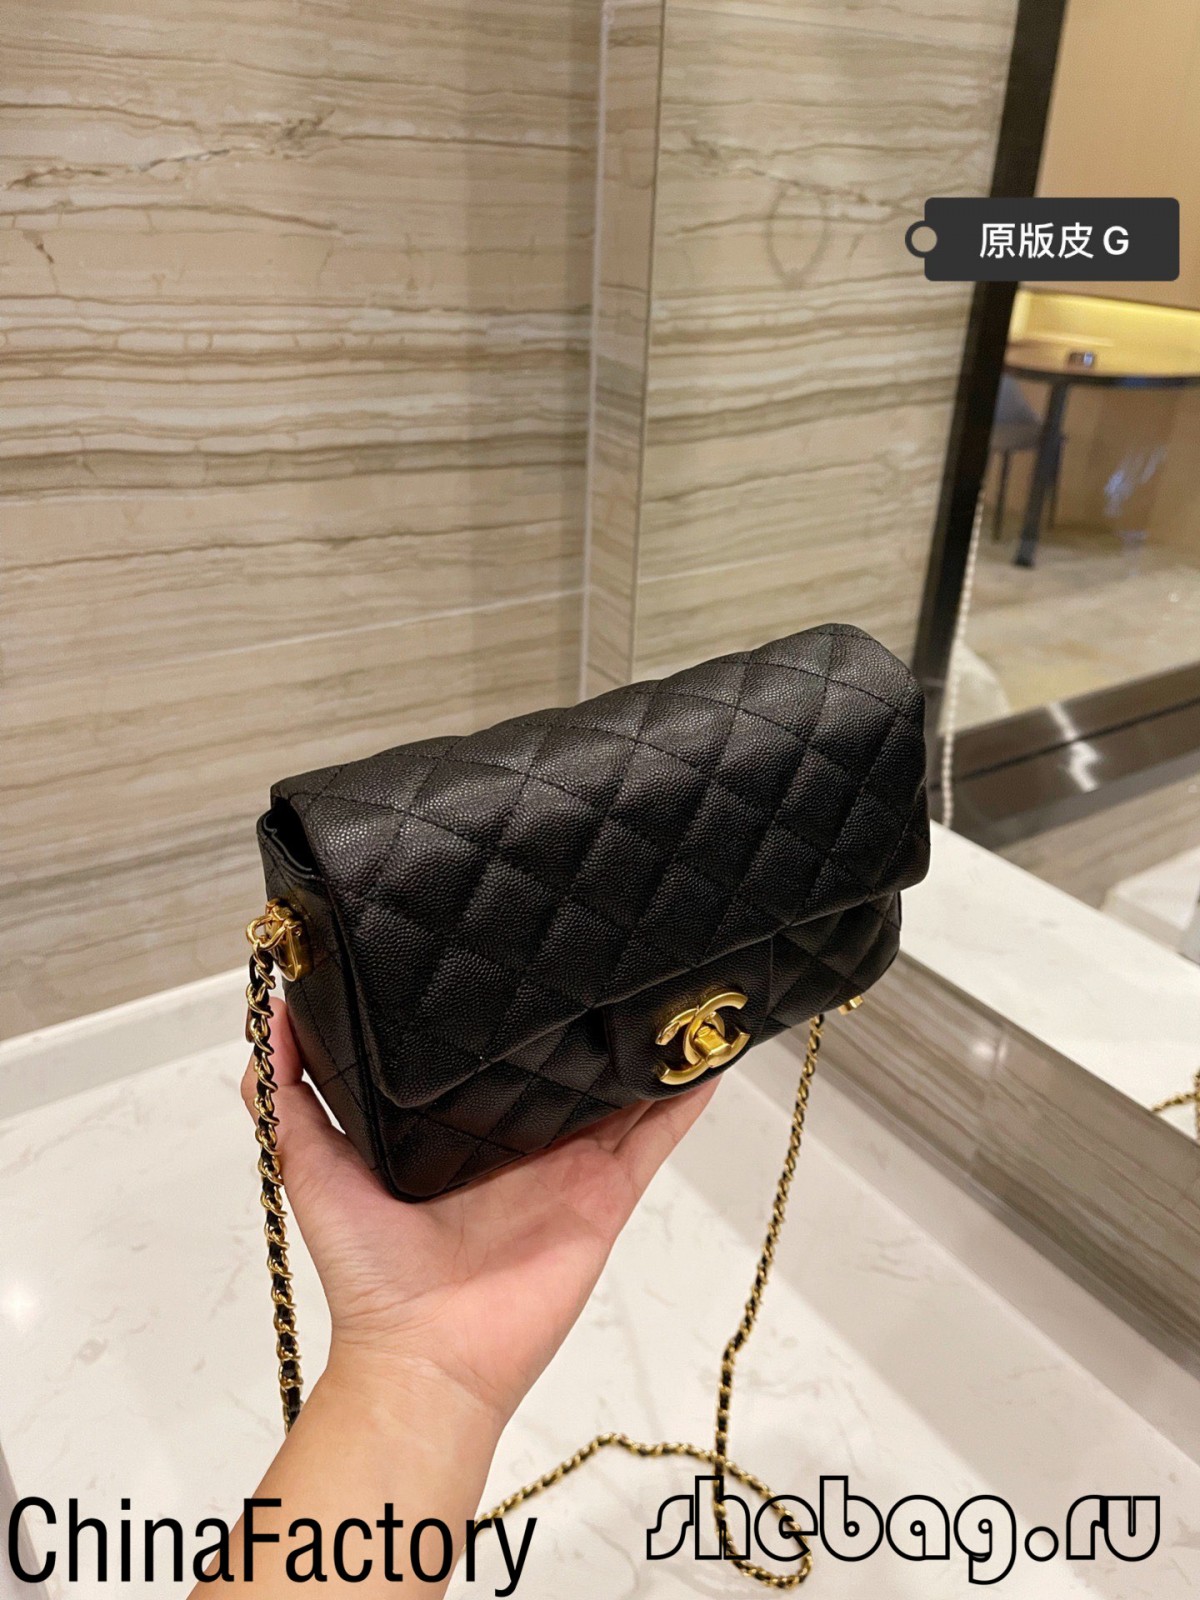 Replika e haviarit me çanta klasike me kapak Chanel: çantë duhet (2022 më e nxehta)-Dyqani në internet i çantave të rreme Louis Vuitton me cilësi më të mirë, çanta kopjuese ru